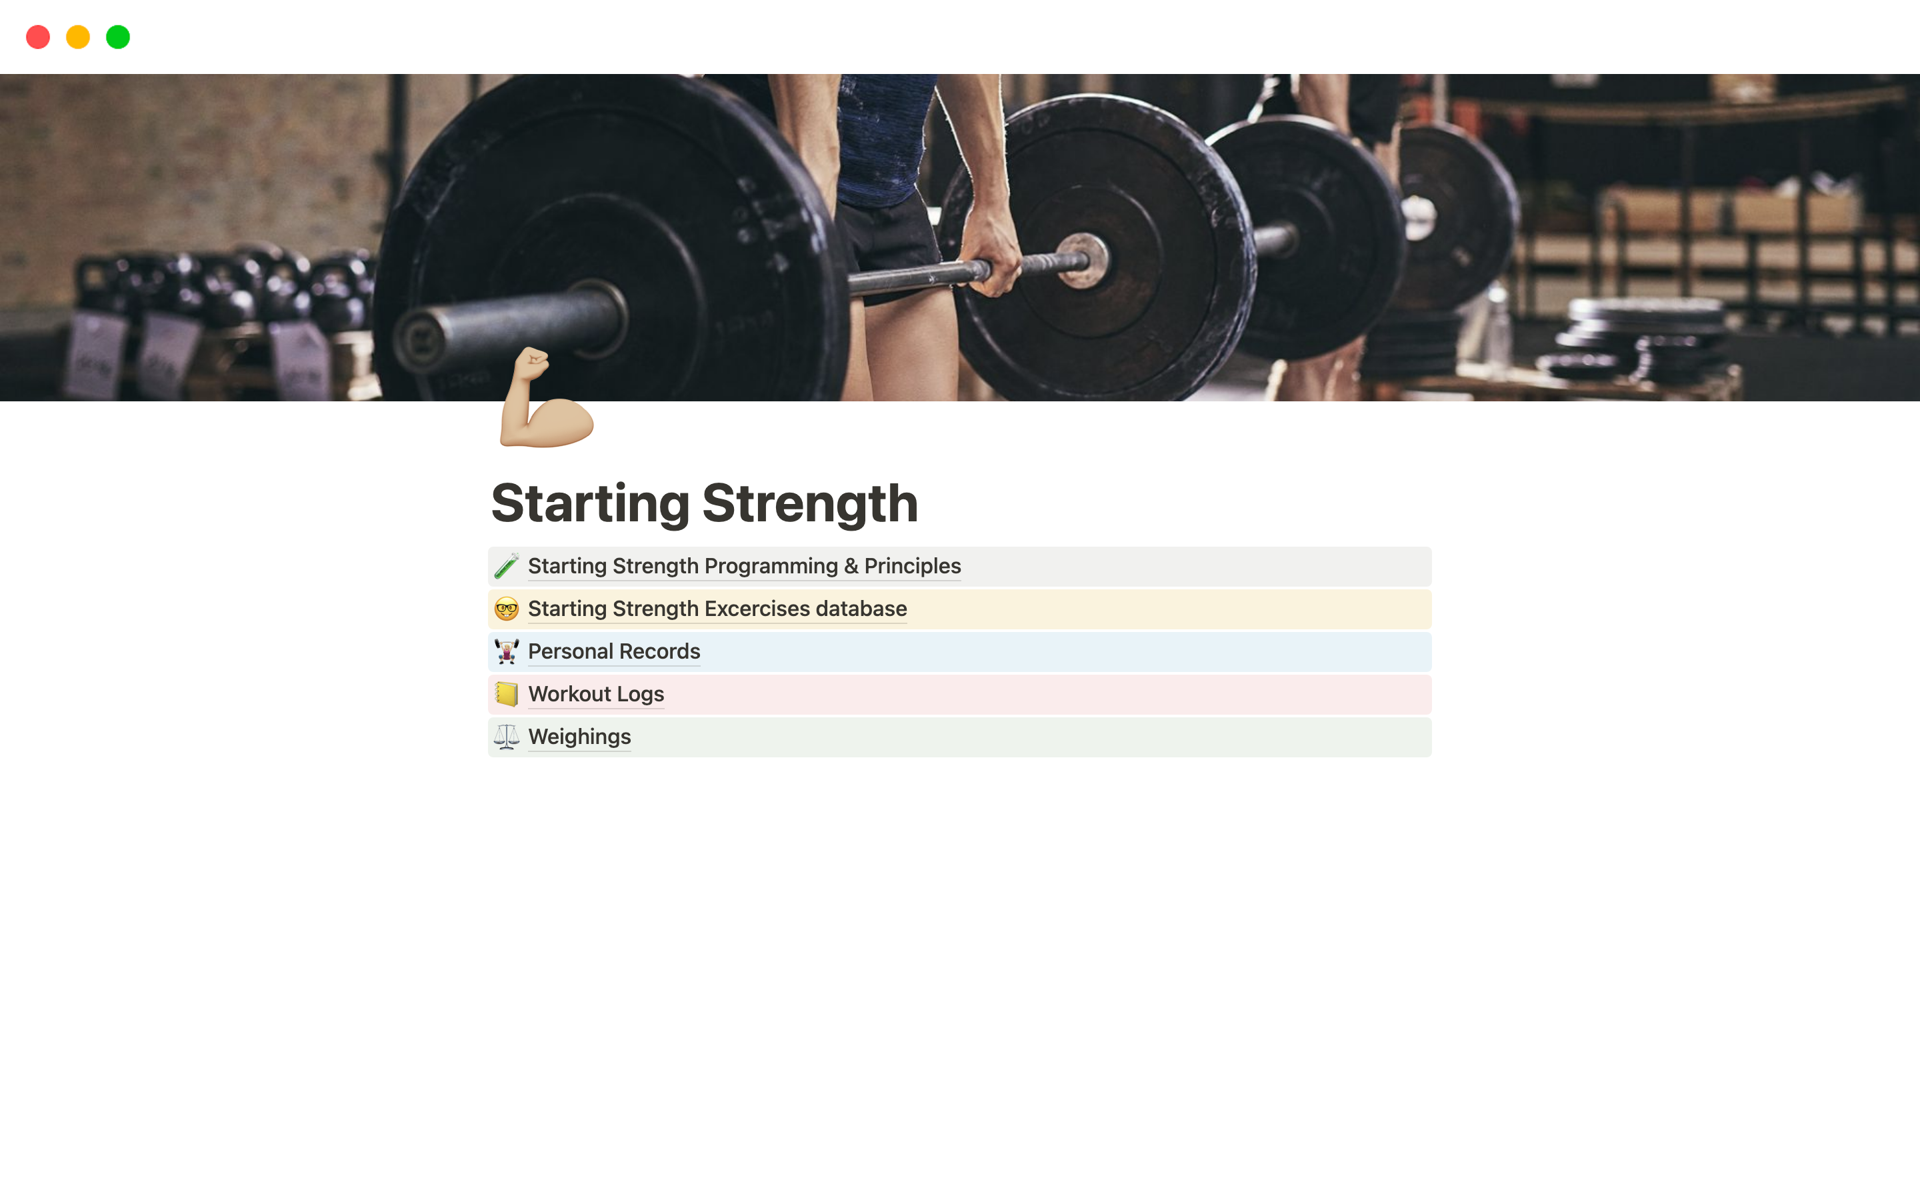 Vista previa de una plantilla para Starting Strength training program